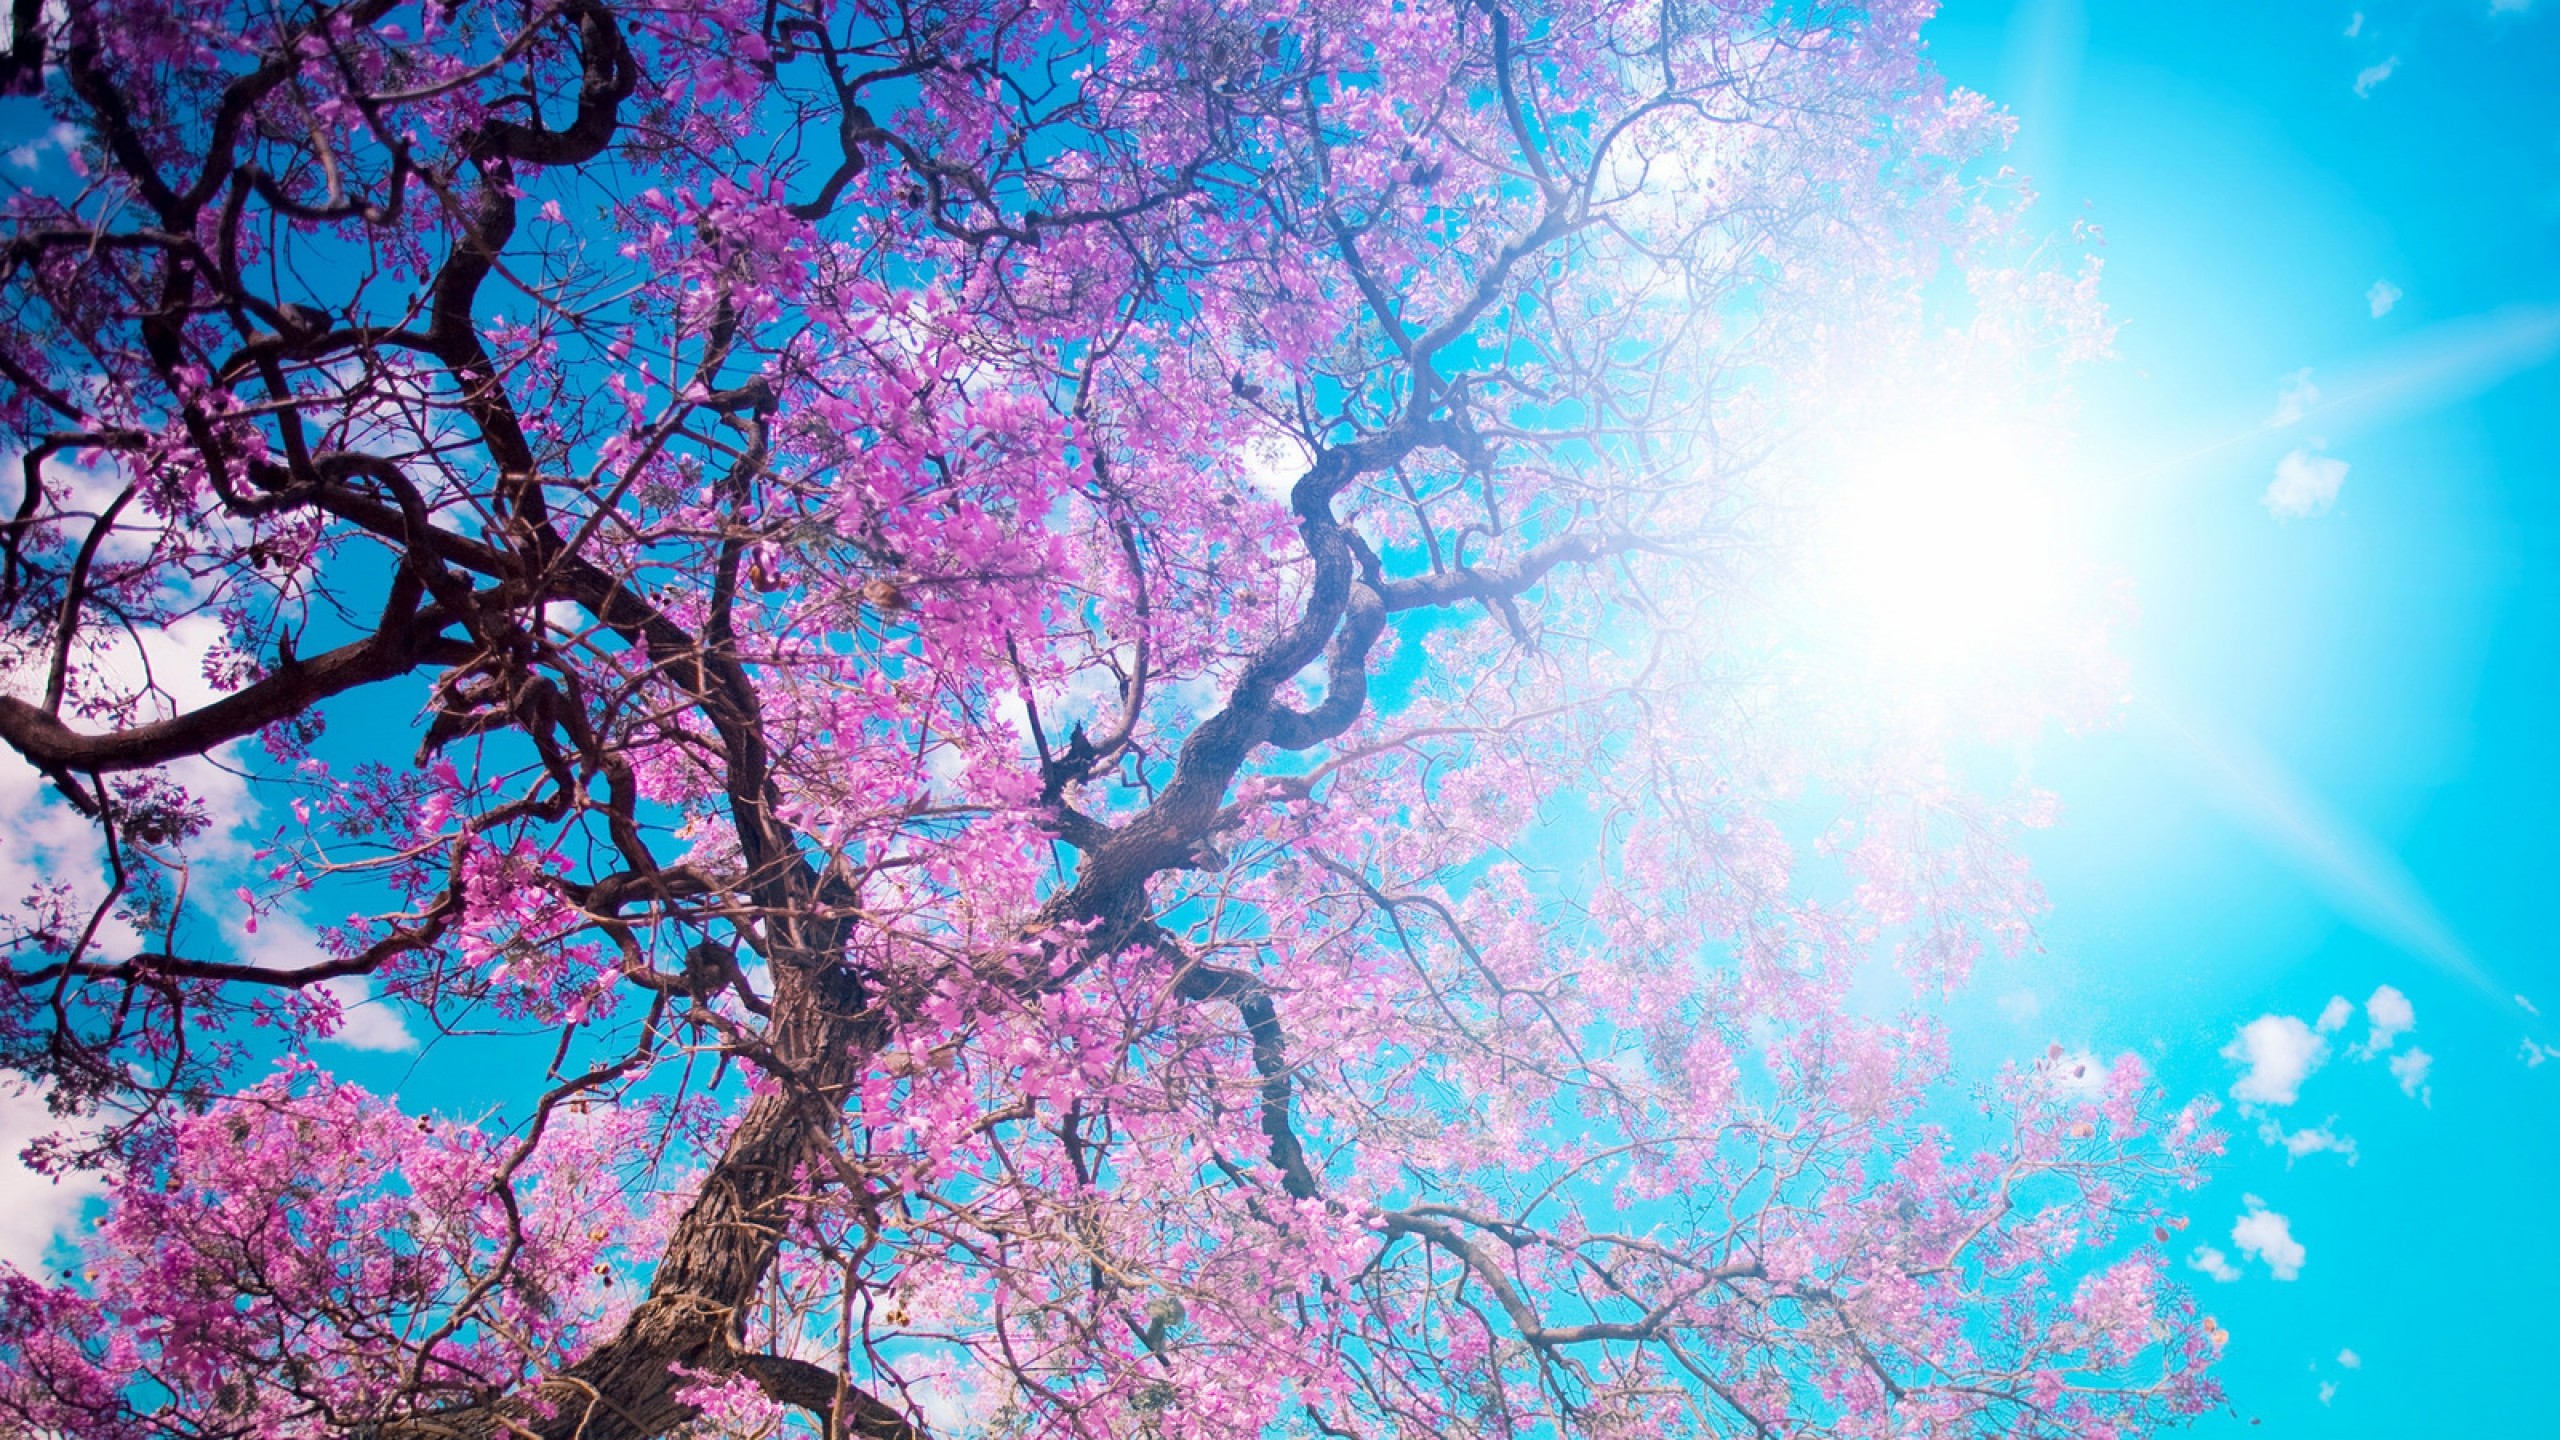 Wallpaper o hanami, blossom festival and to enjoy the cherry blossoms, japan